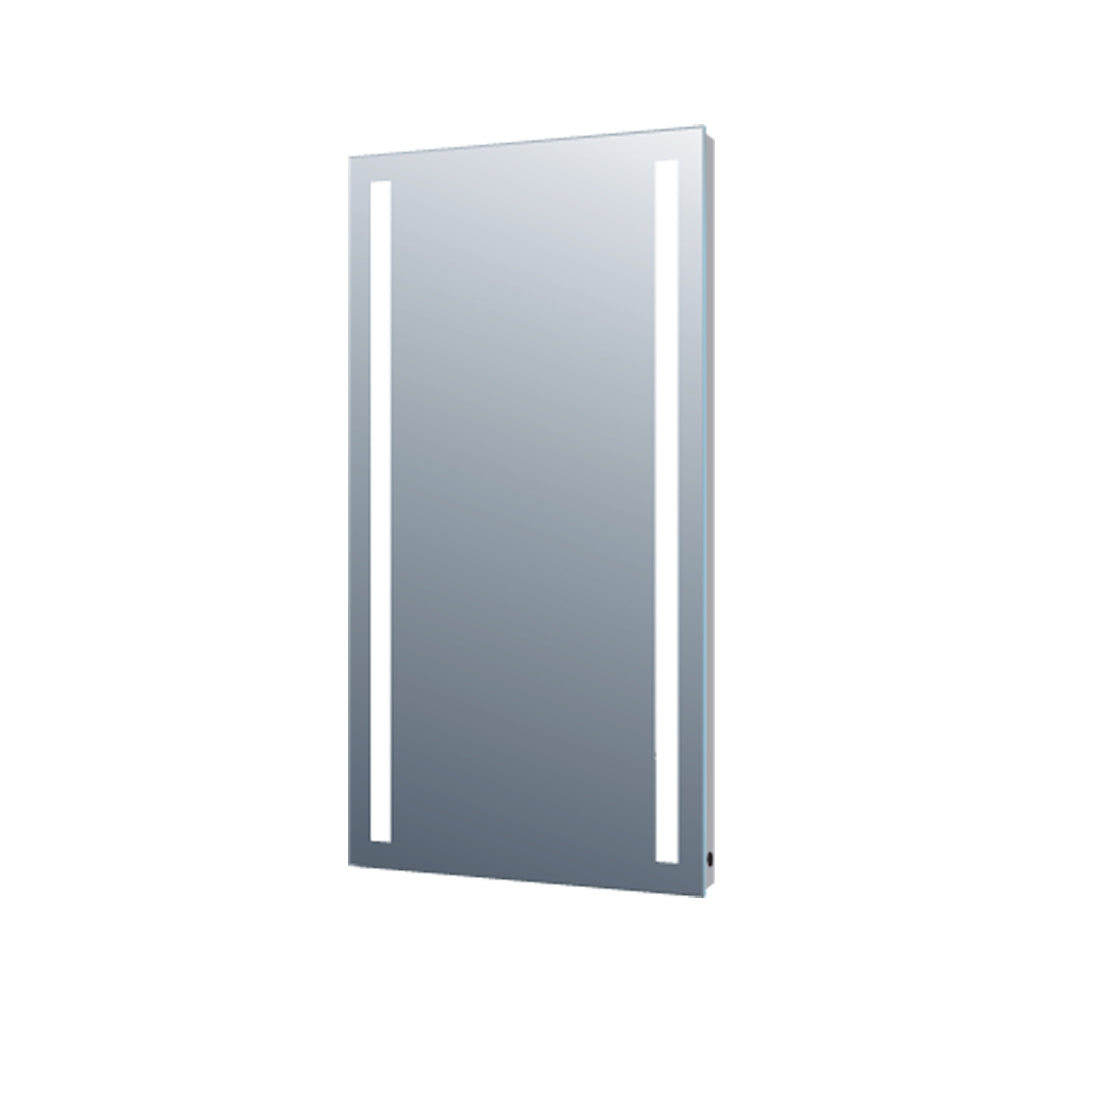 Luz helada vertical de espejo de 24". Respaldo de PVC con juntas de aluminio (DAX-TH-1)